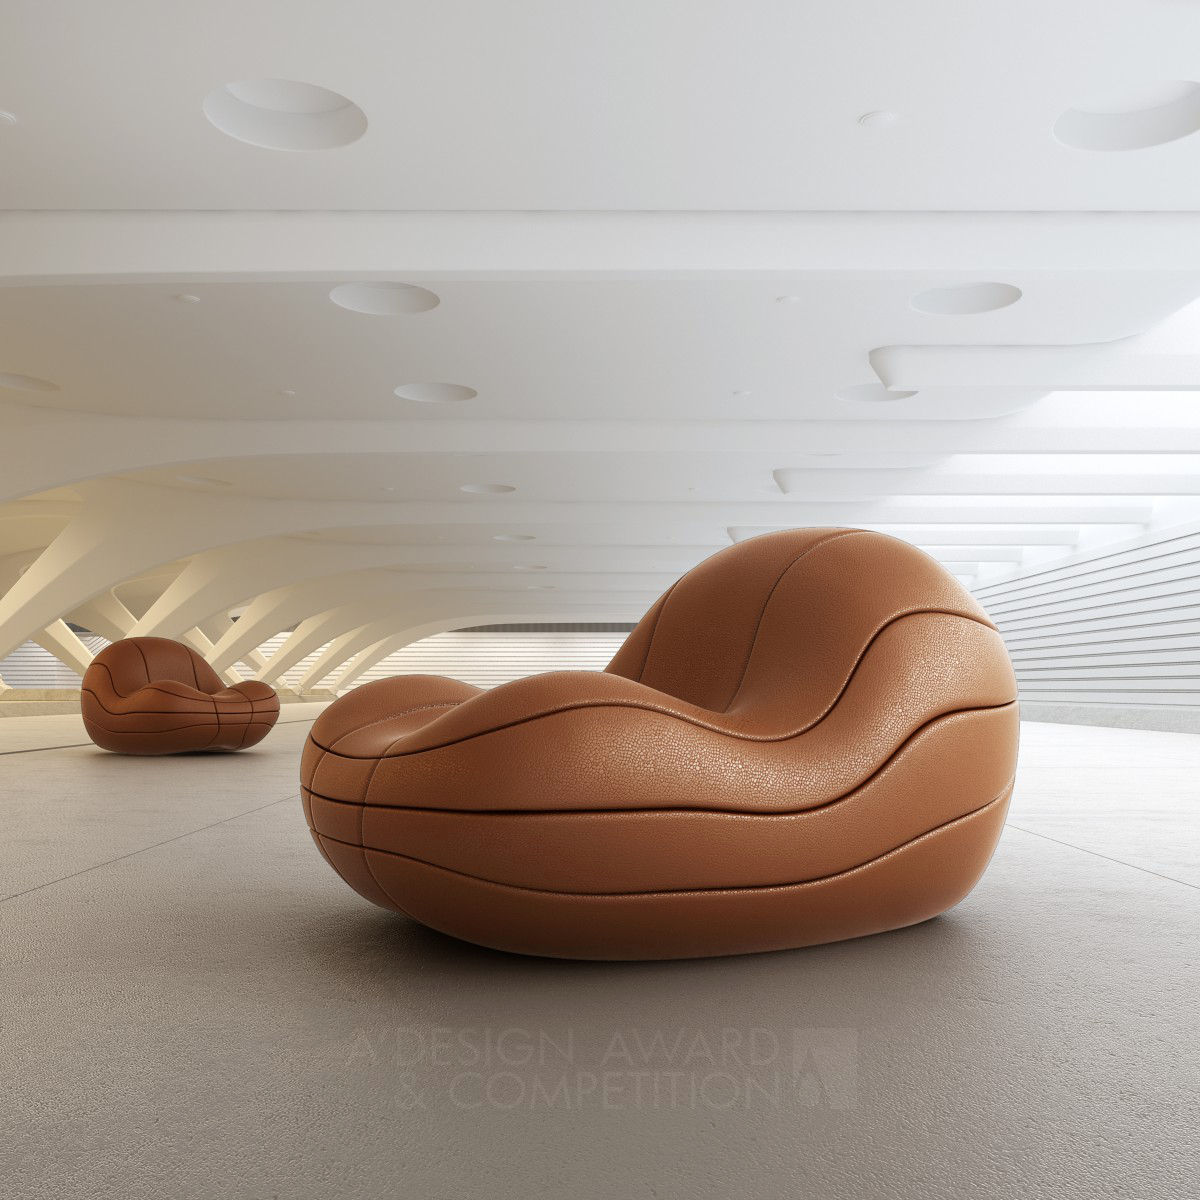 Basquete  Lounge chair by Mula Preta Design